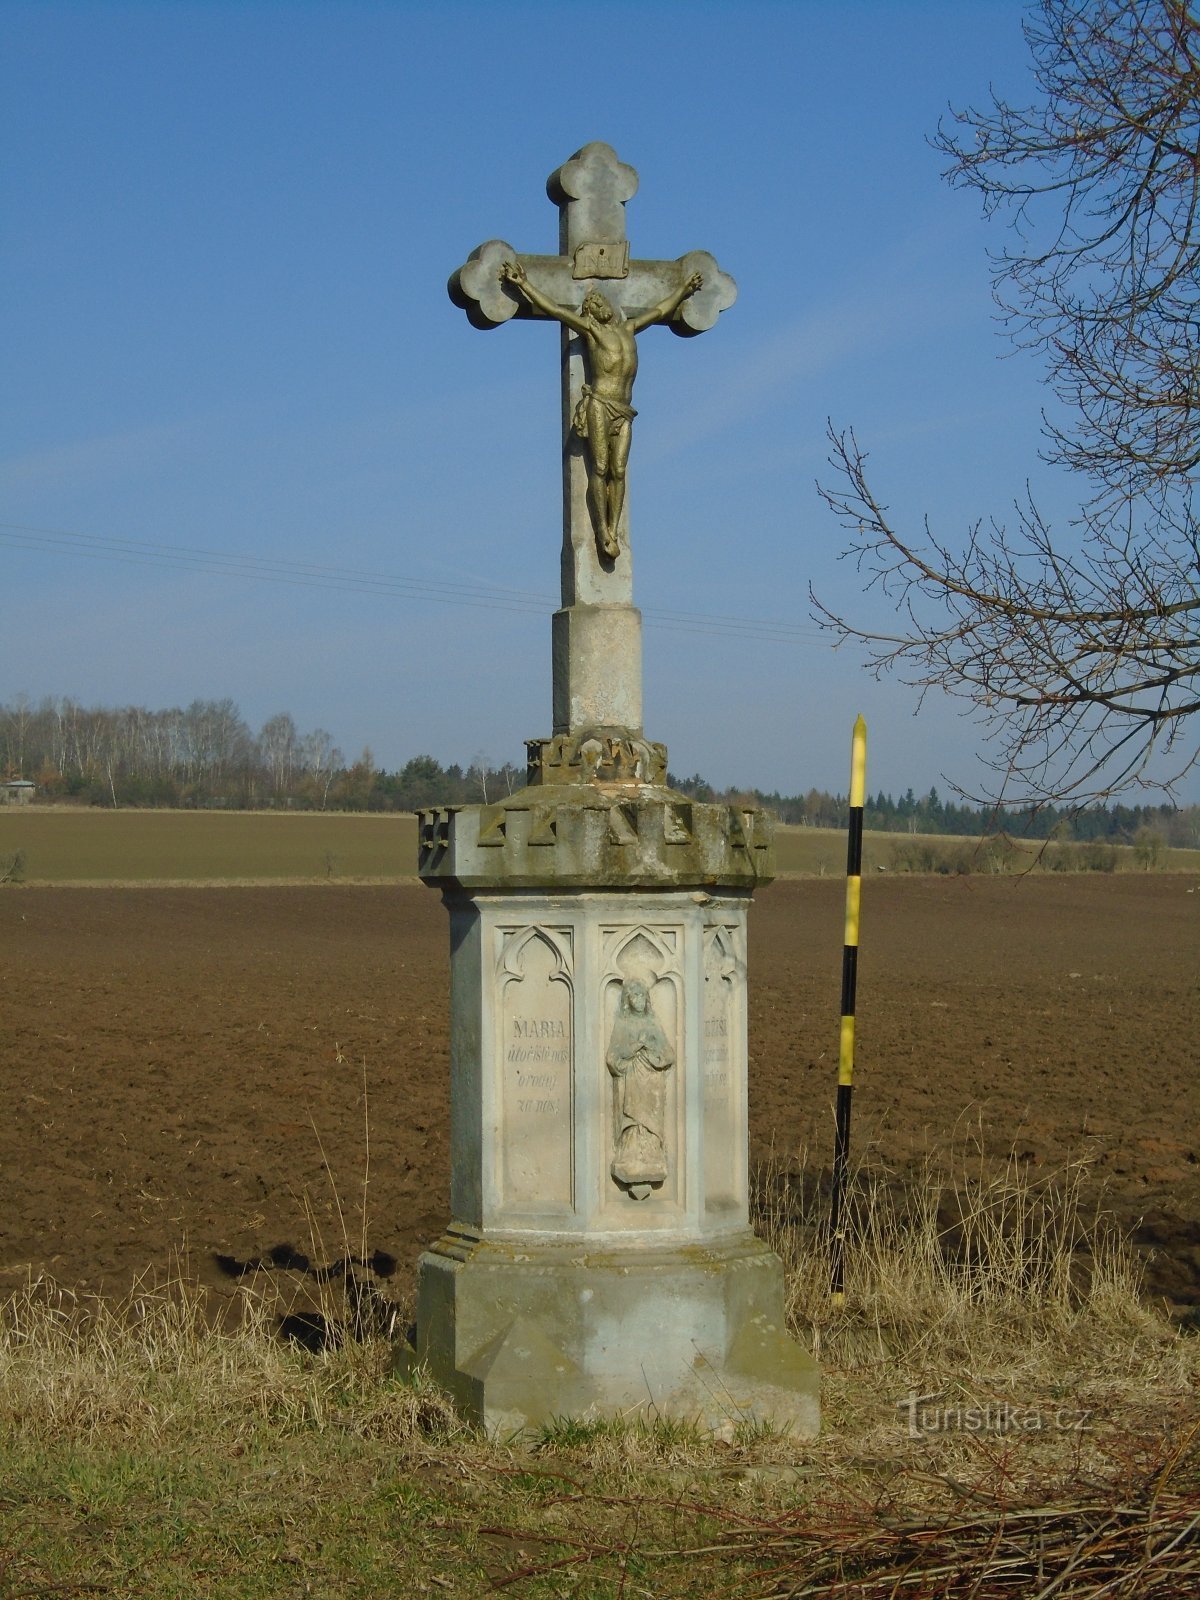 小屋后面的十字架 (Hradec Králové)